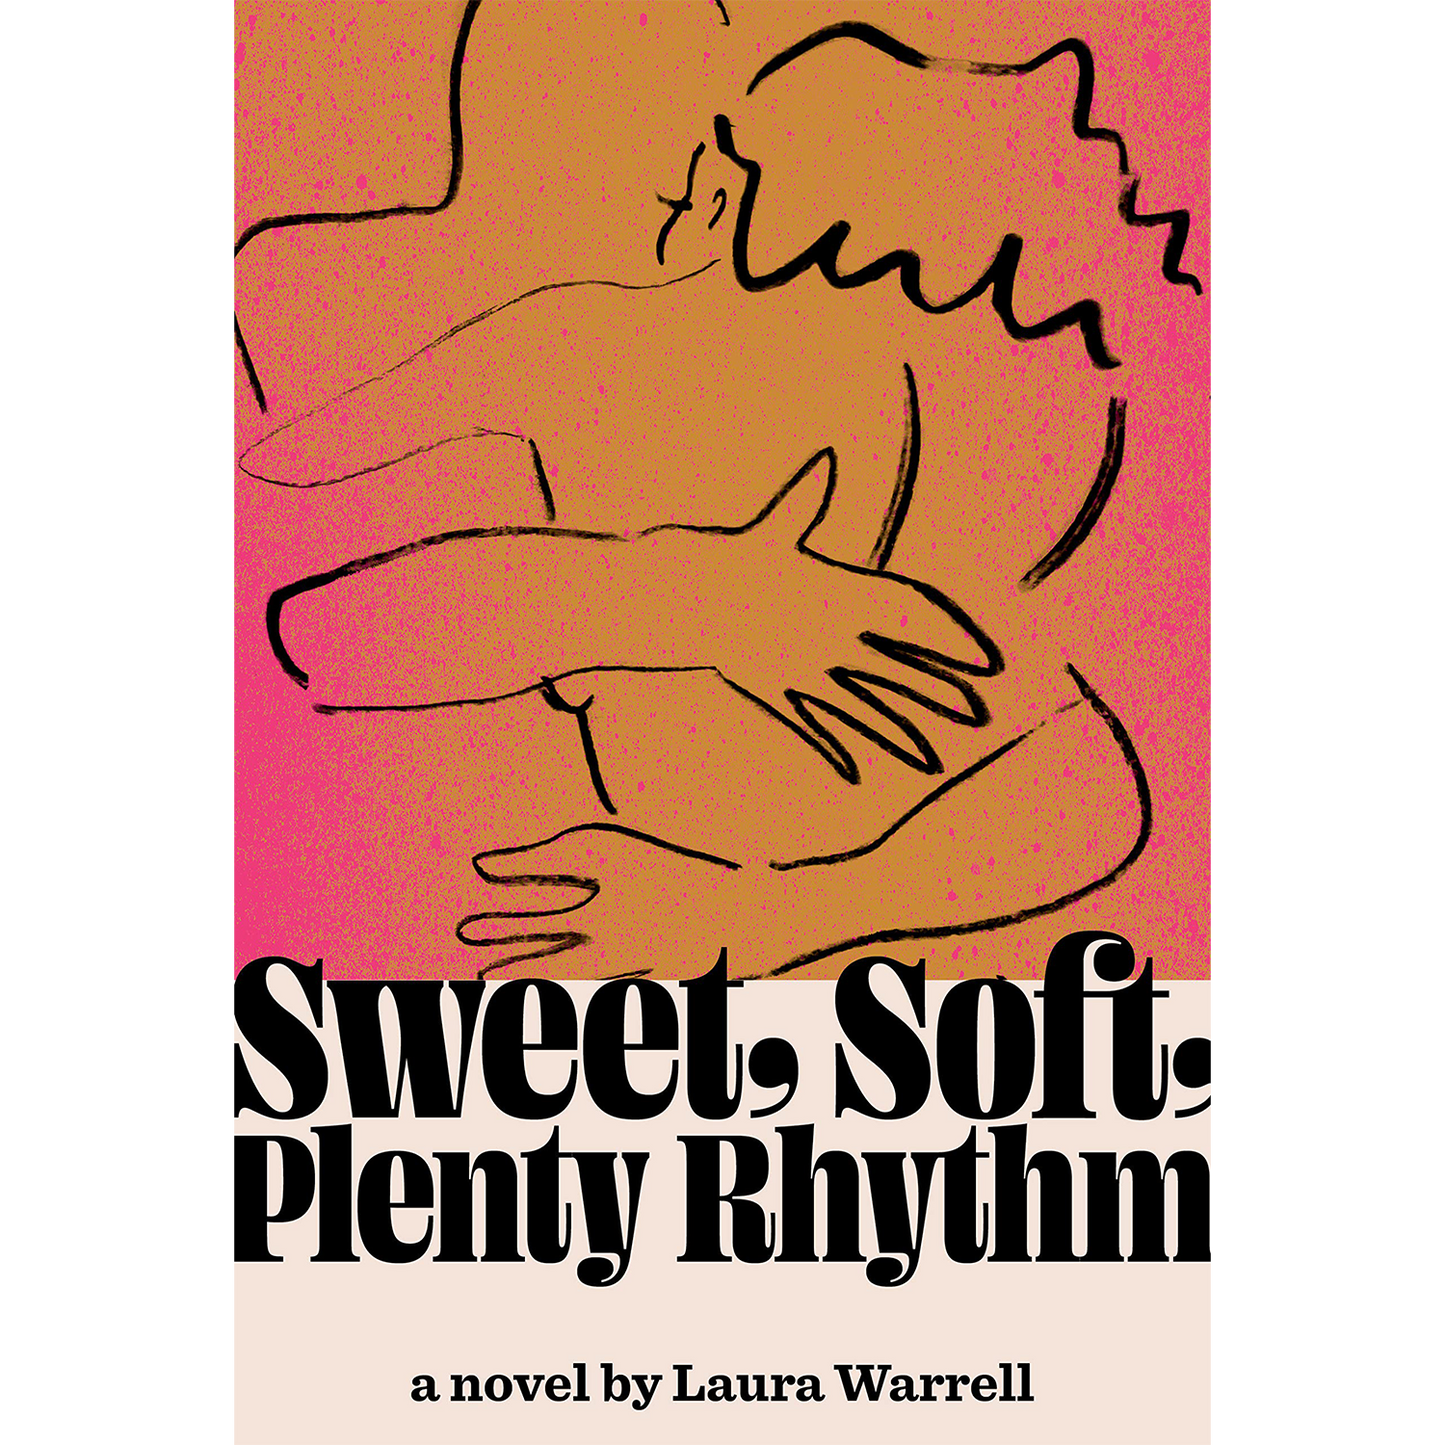 Sweet, Soft, Plenty Rhythm (Hardcover)